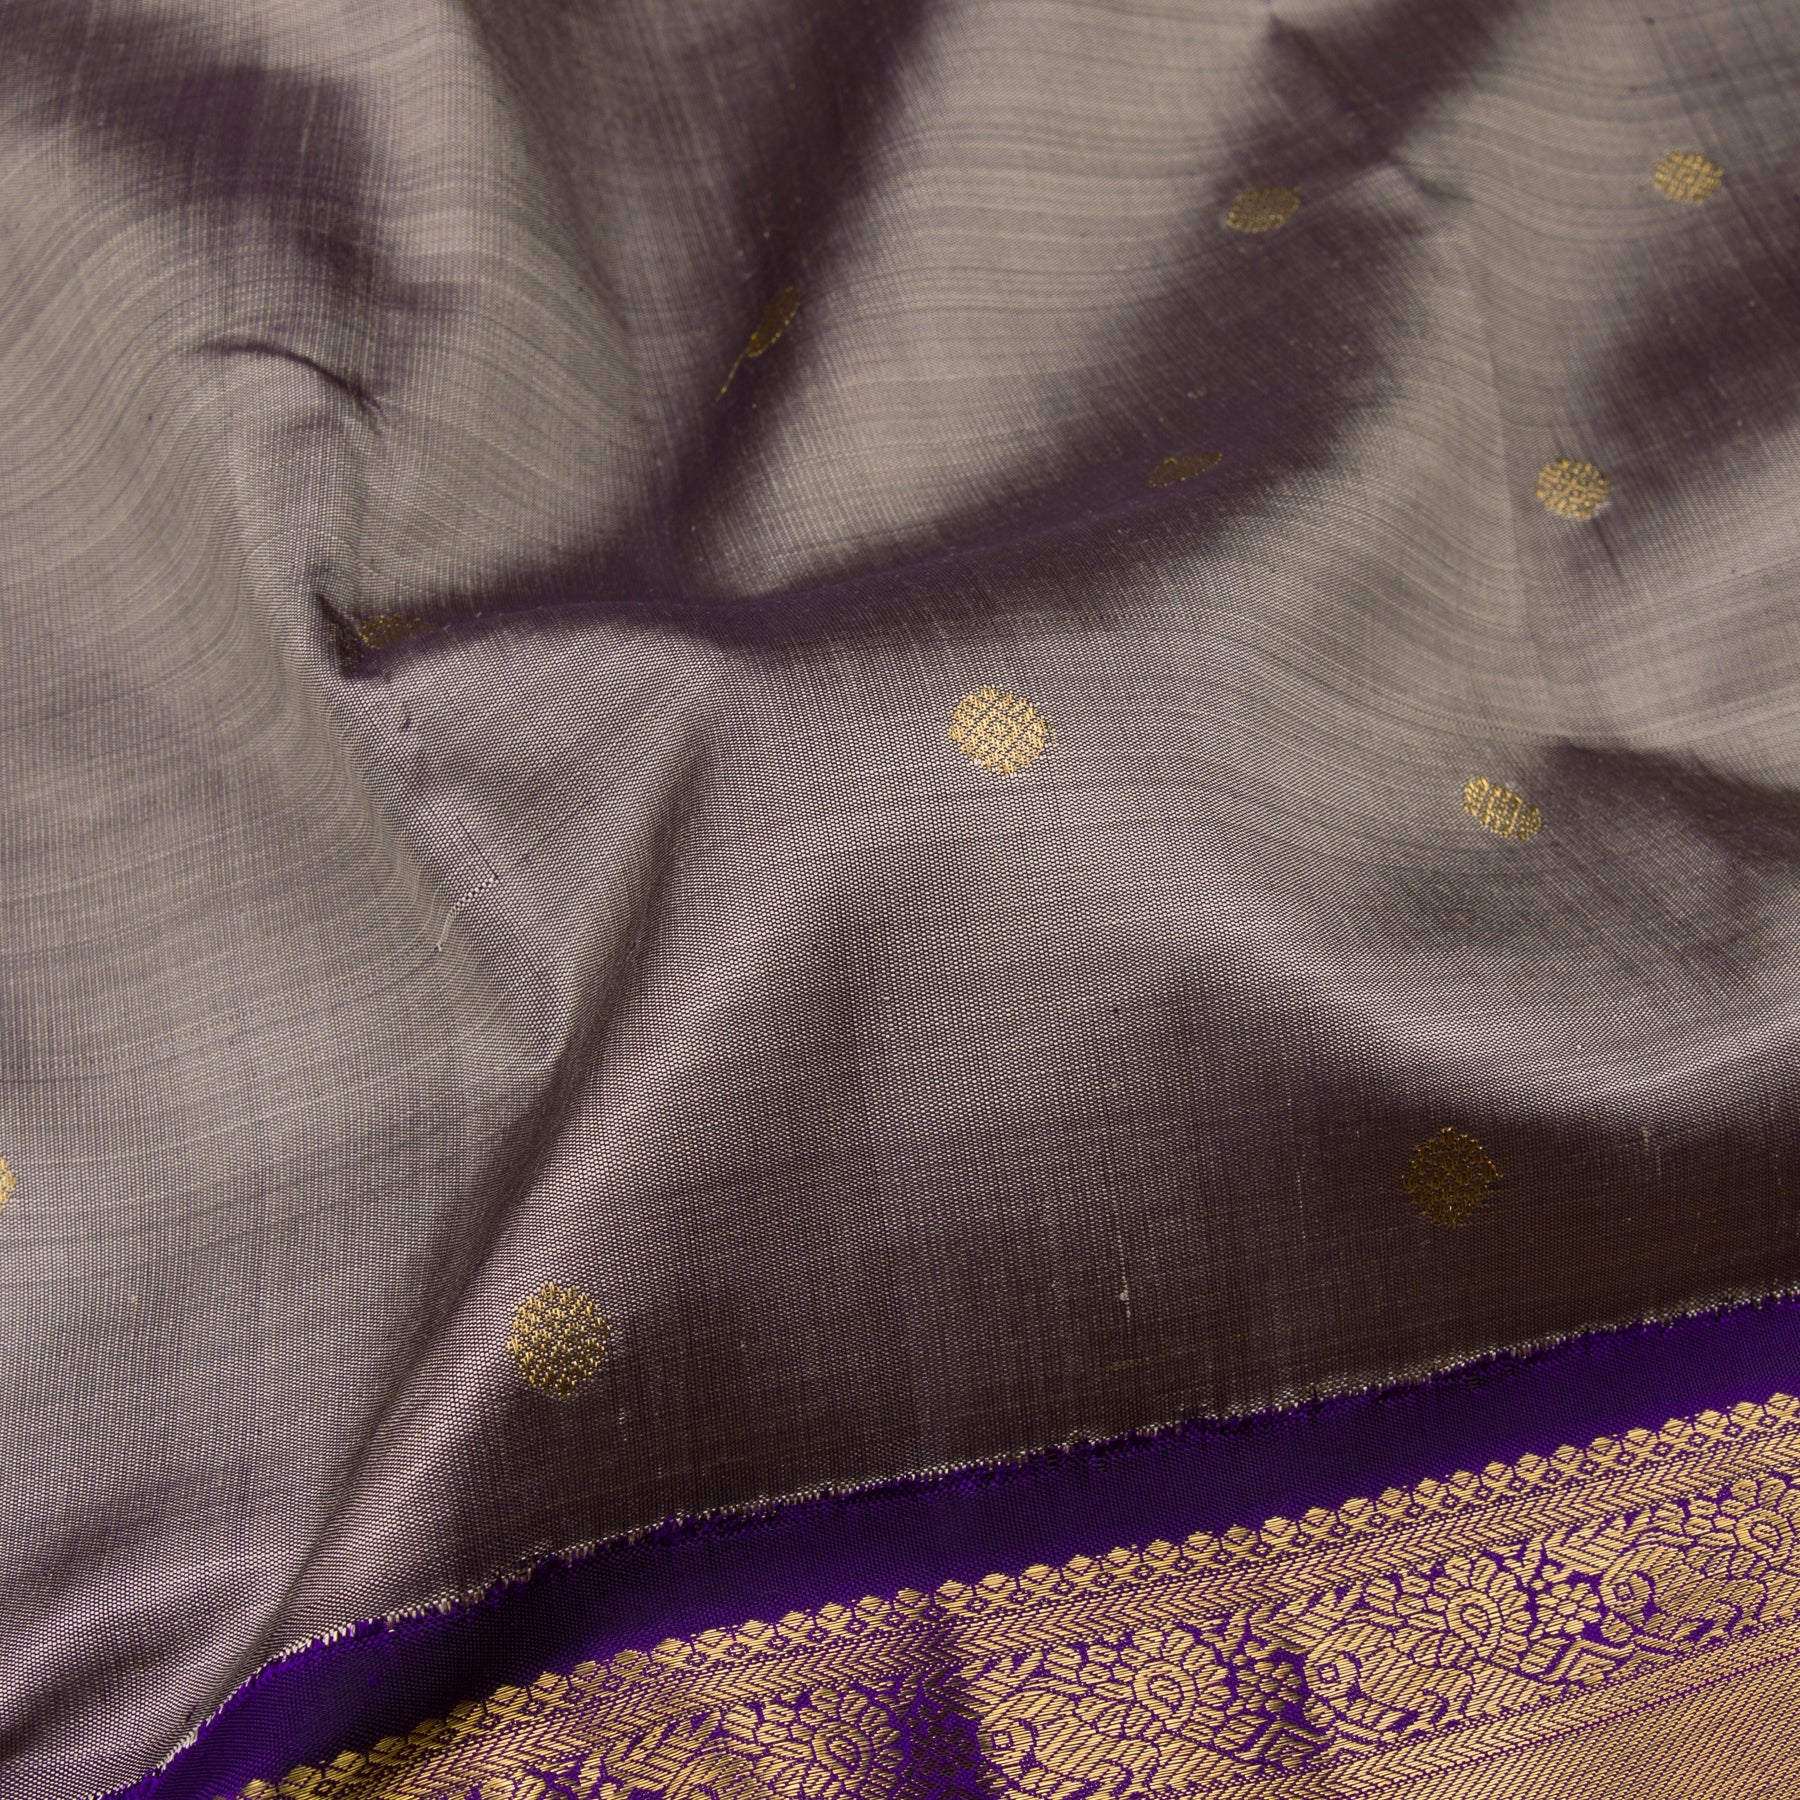 Kanakavalli Kanjivaram Silk Sari 22-110-HS001-12159 - Fabric View